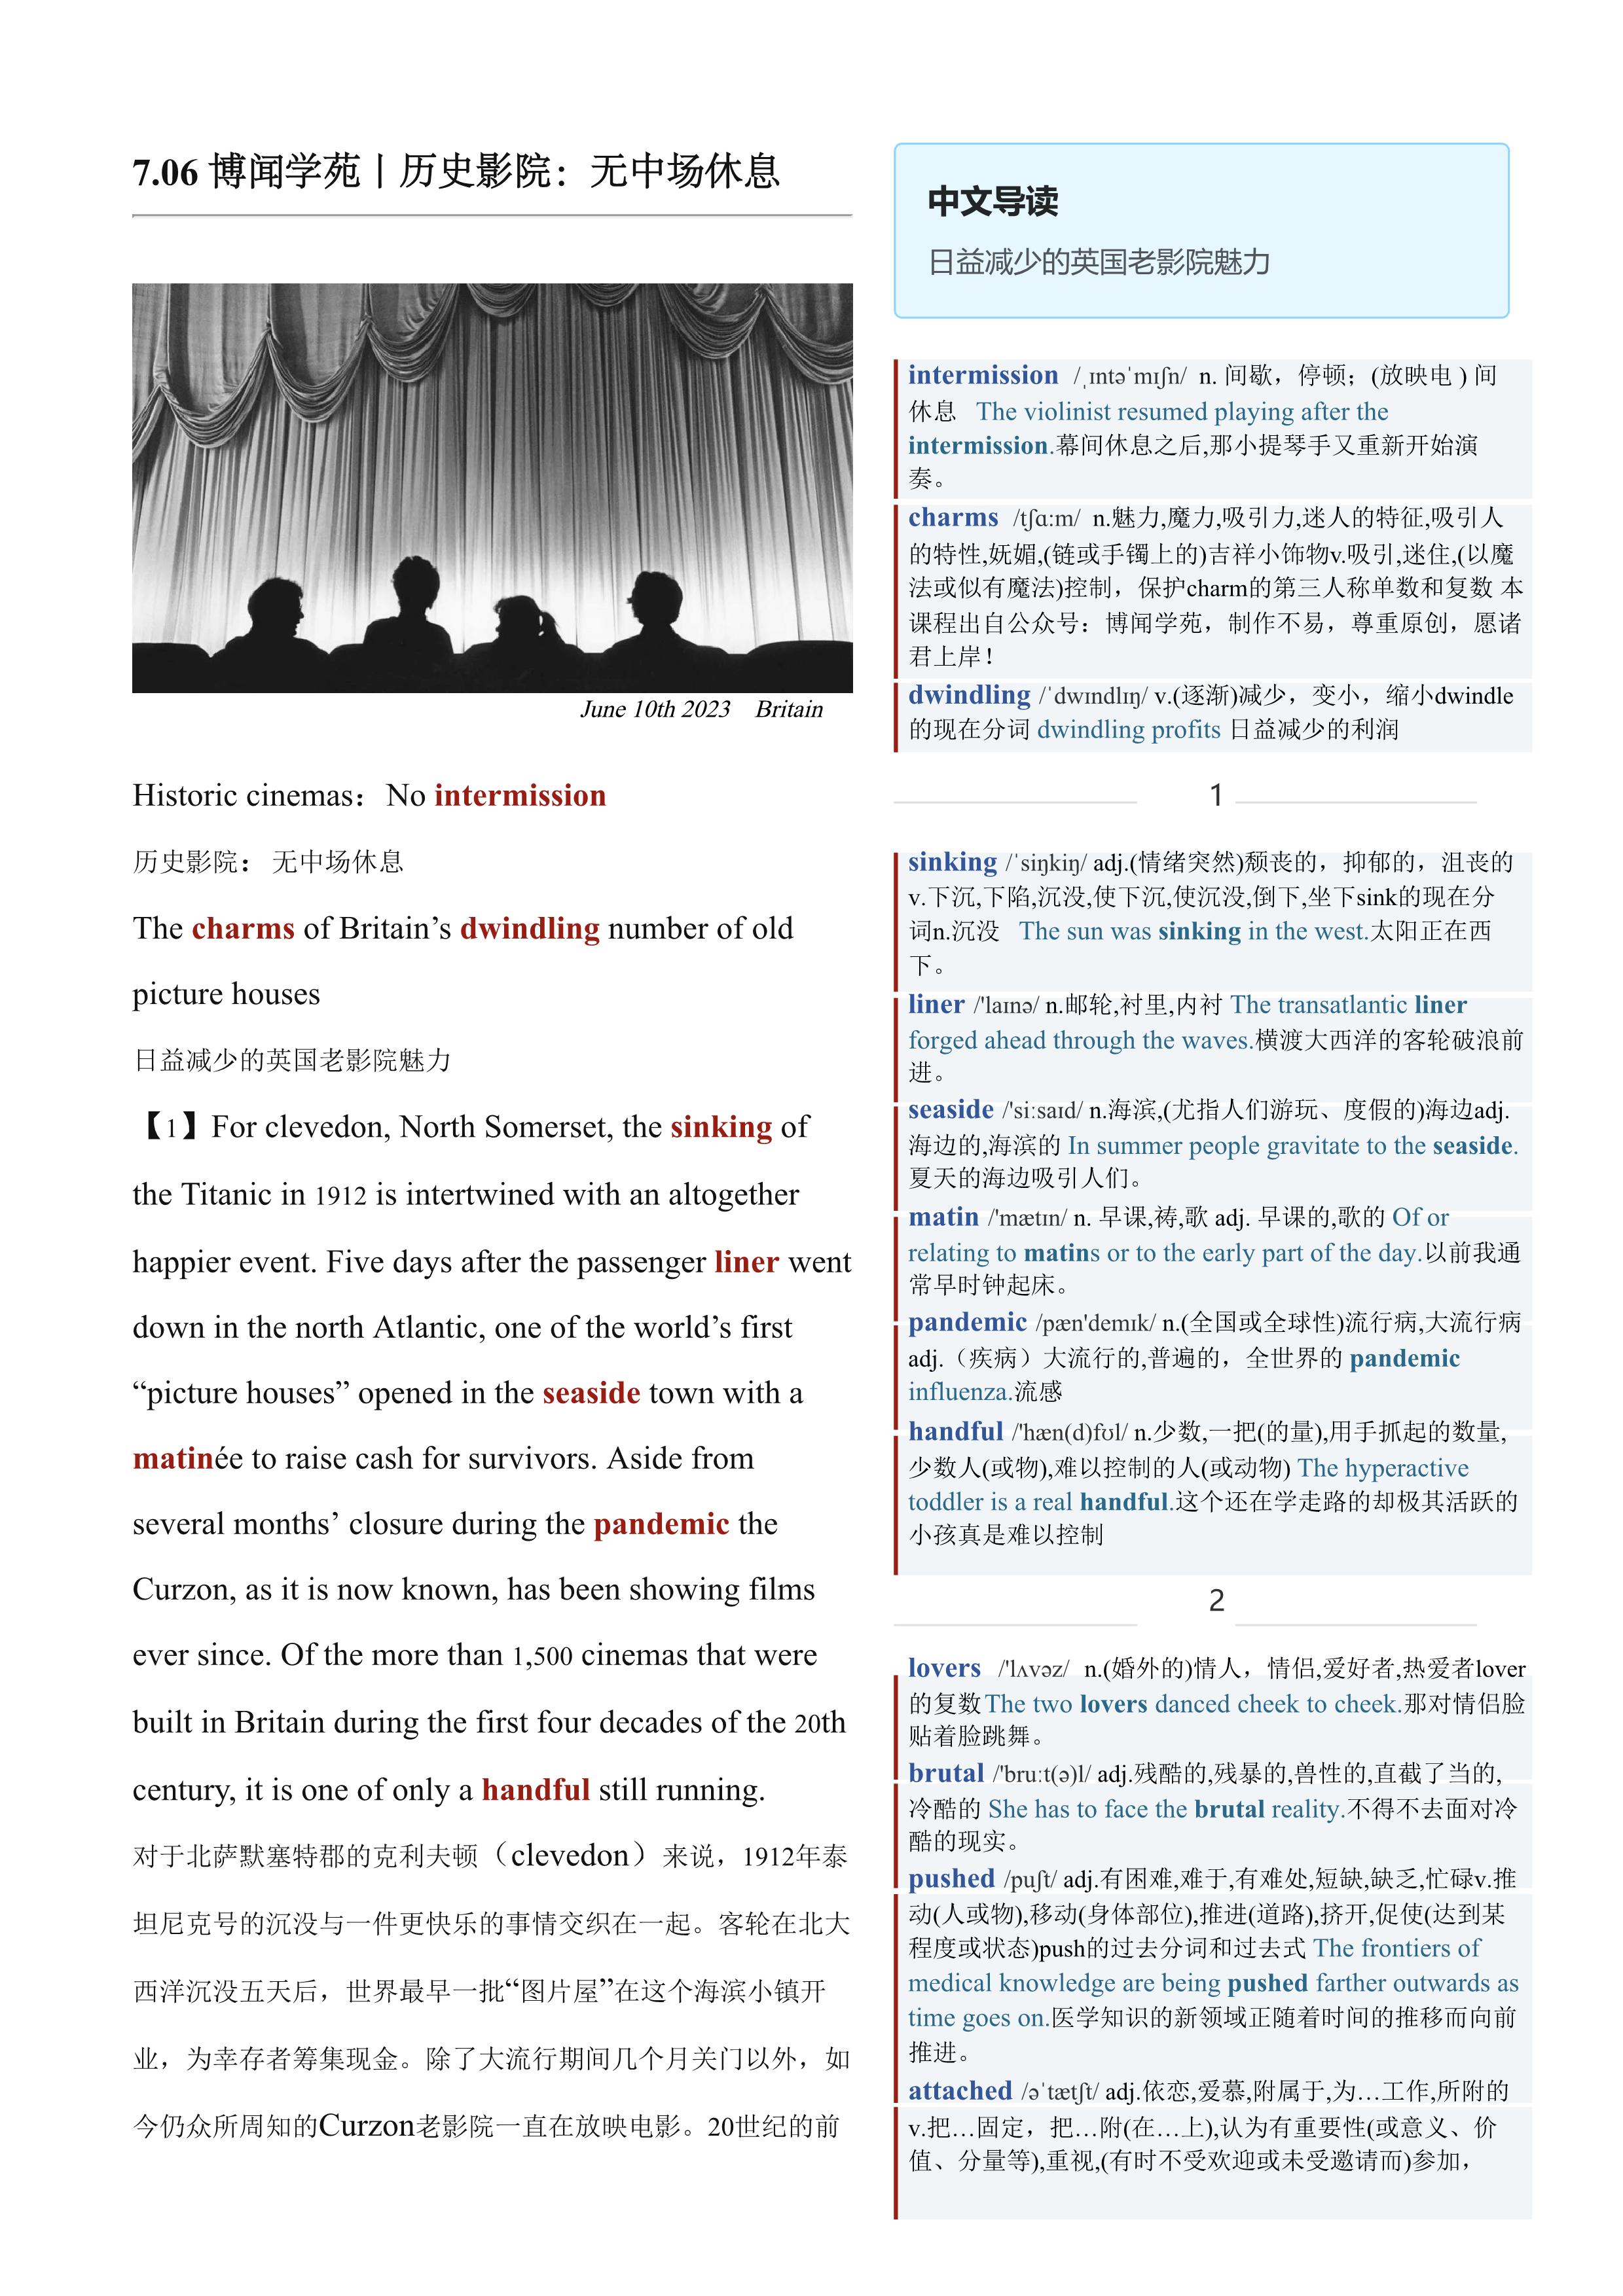 2023.07.06 经济学人双语精读丨历史影院：无中场休息 (.PDF/DOC/MP3)